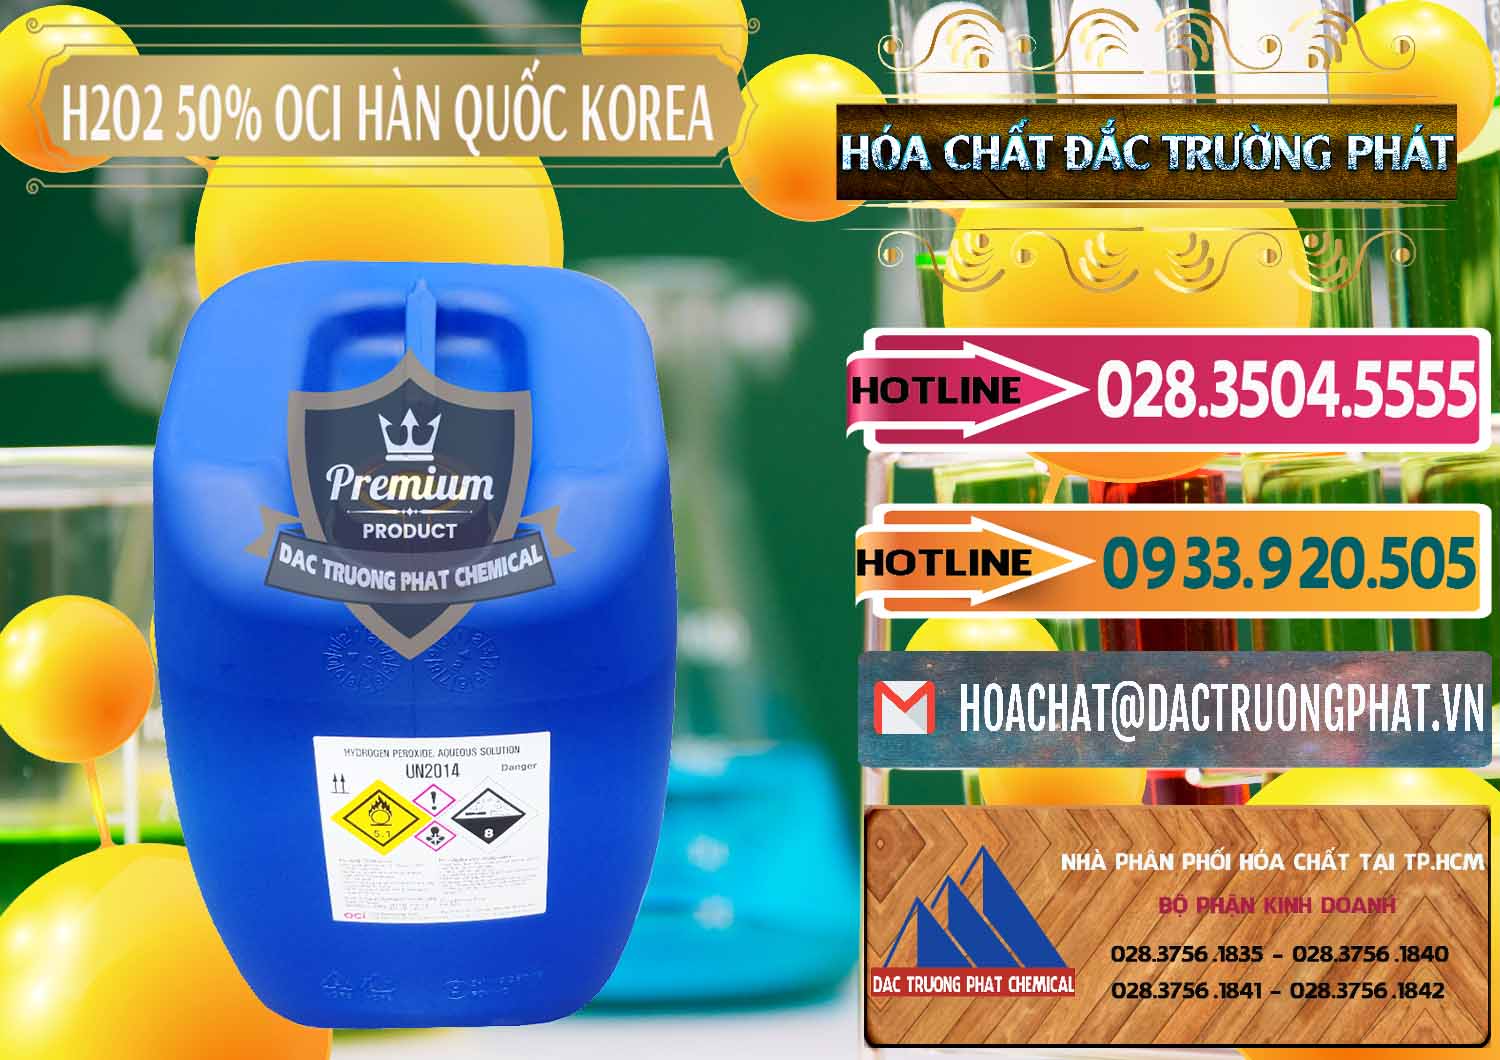 Đơn vị chuyên cung cấp & bán H2O2 - Hydrogen Peroxide 50% OCI Hàn Quốc Korea - 0075 - Nhà cung cấp _ bán hóa chất tại TP.HCM - dactruongphat.vn